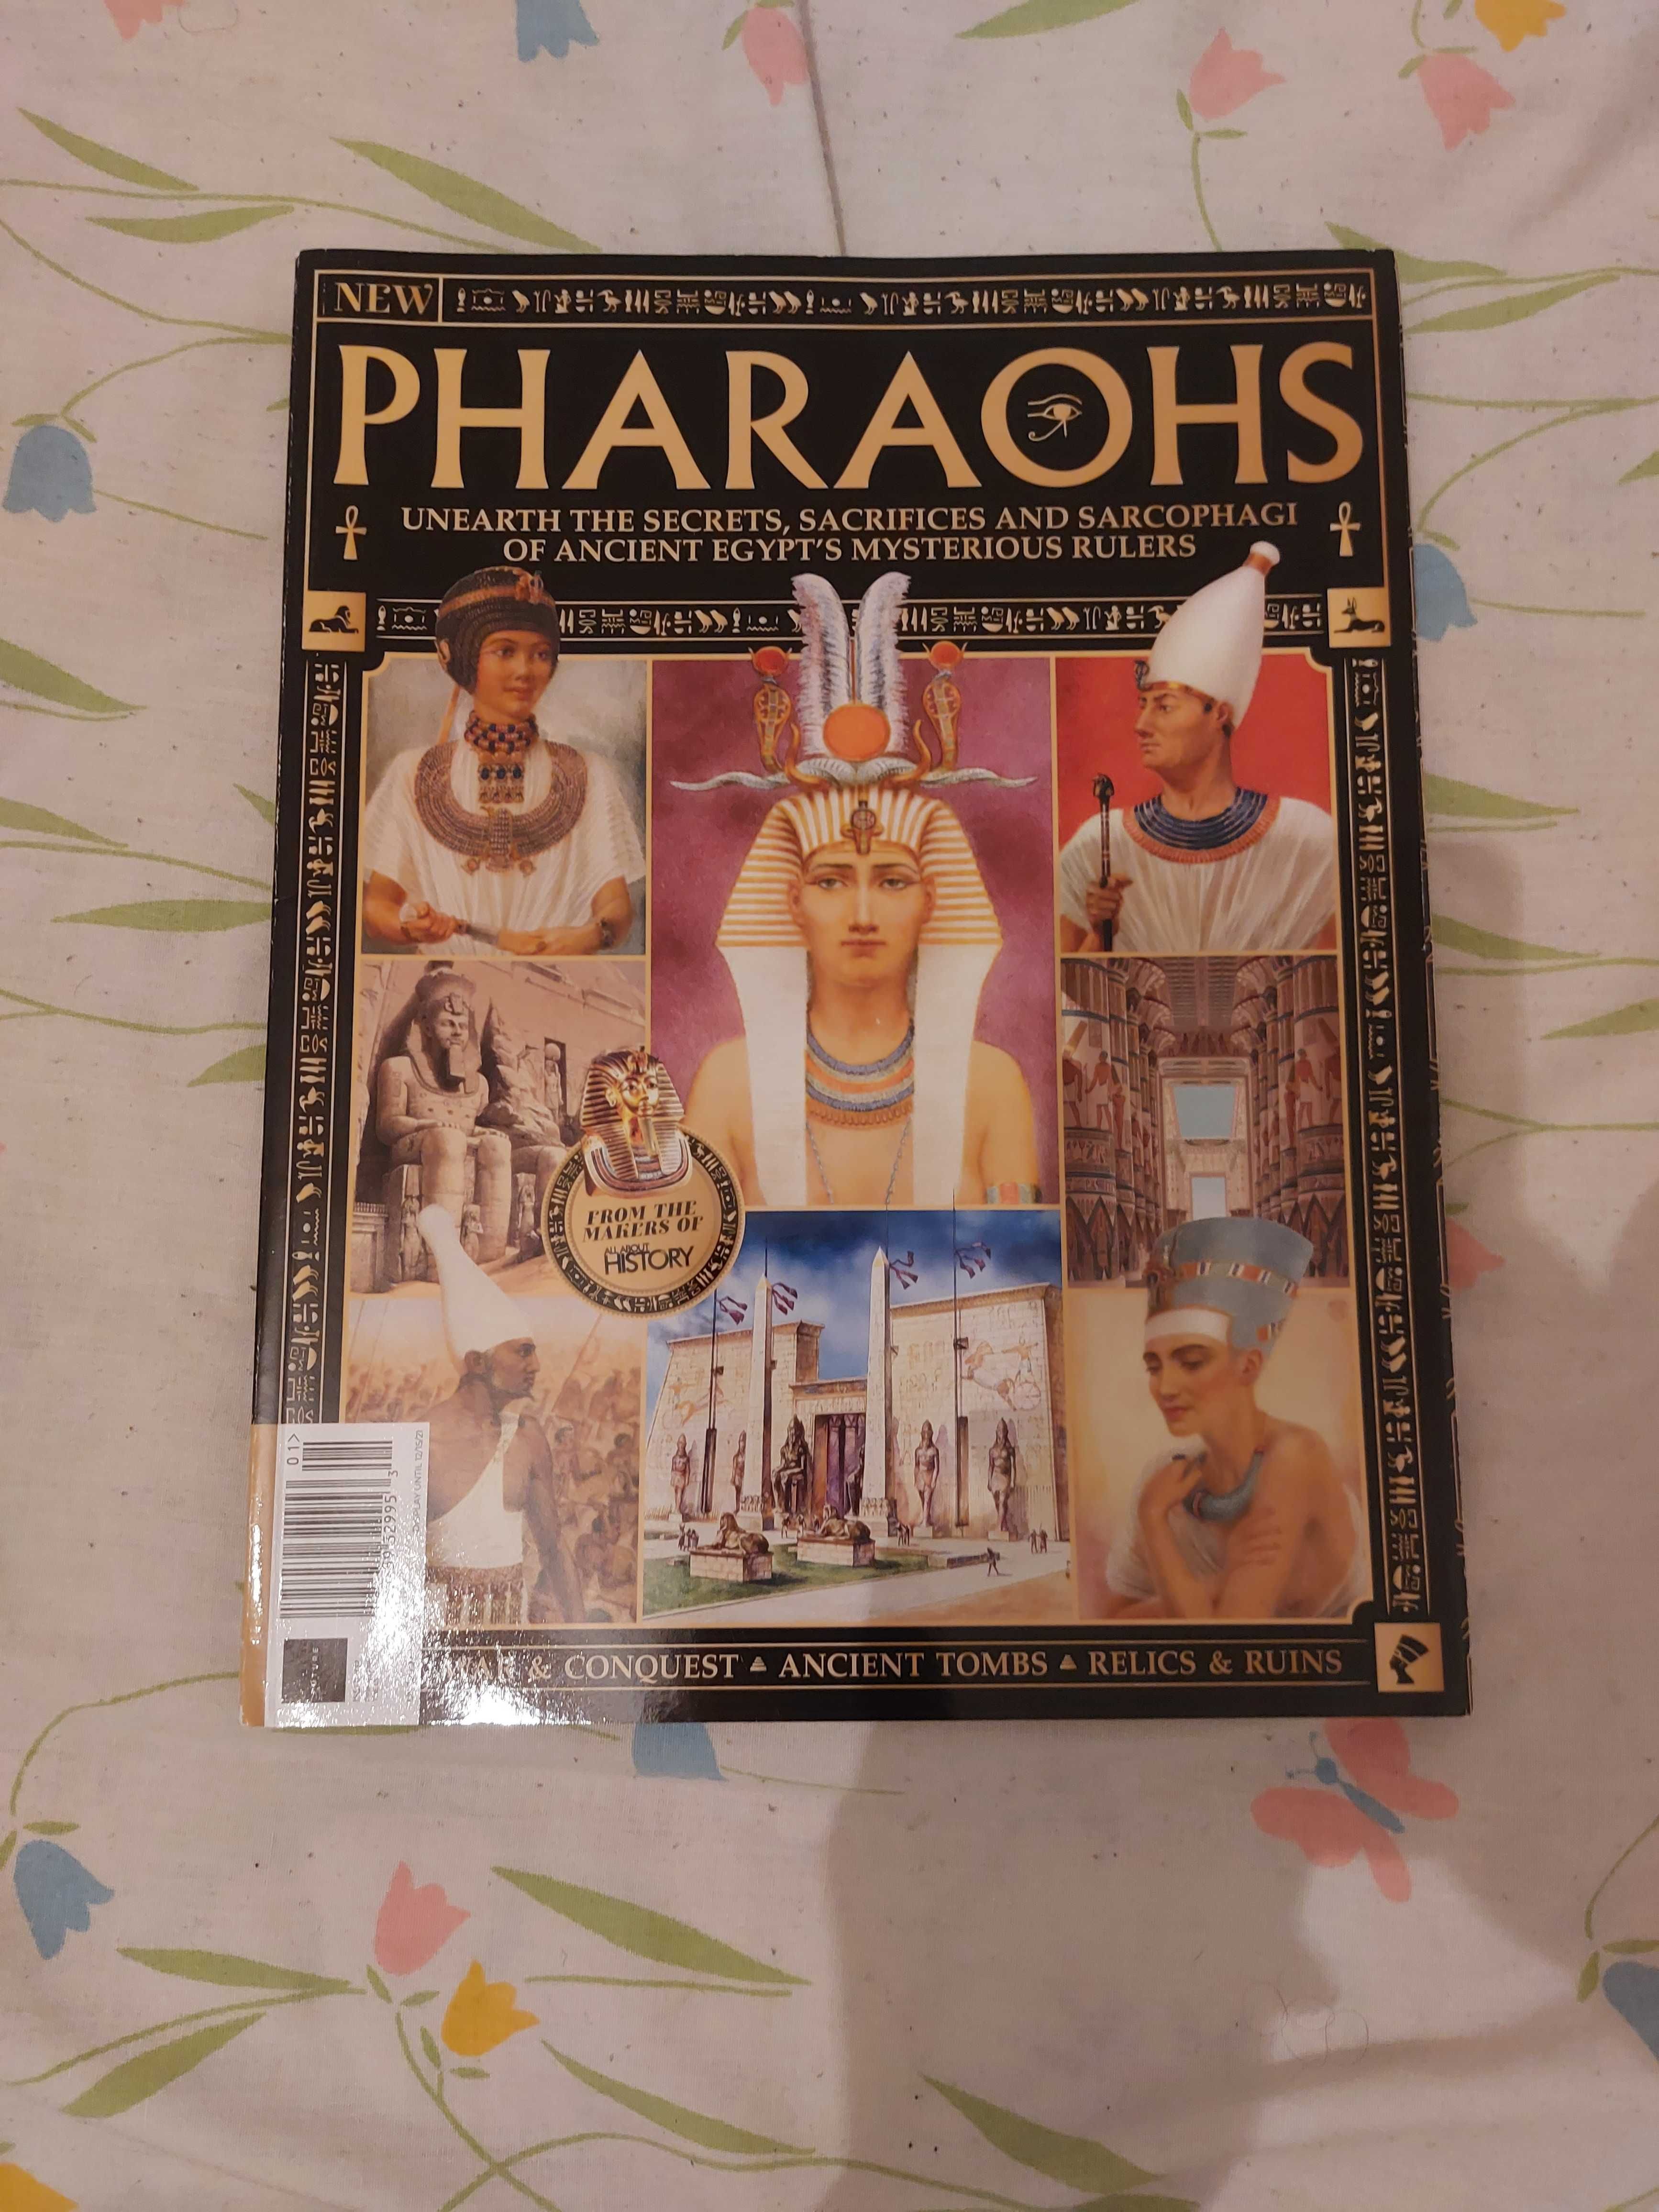 Revista Pharaohs "Faraós" - Egito